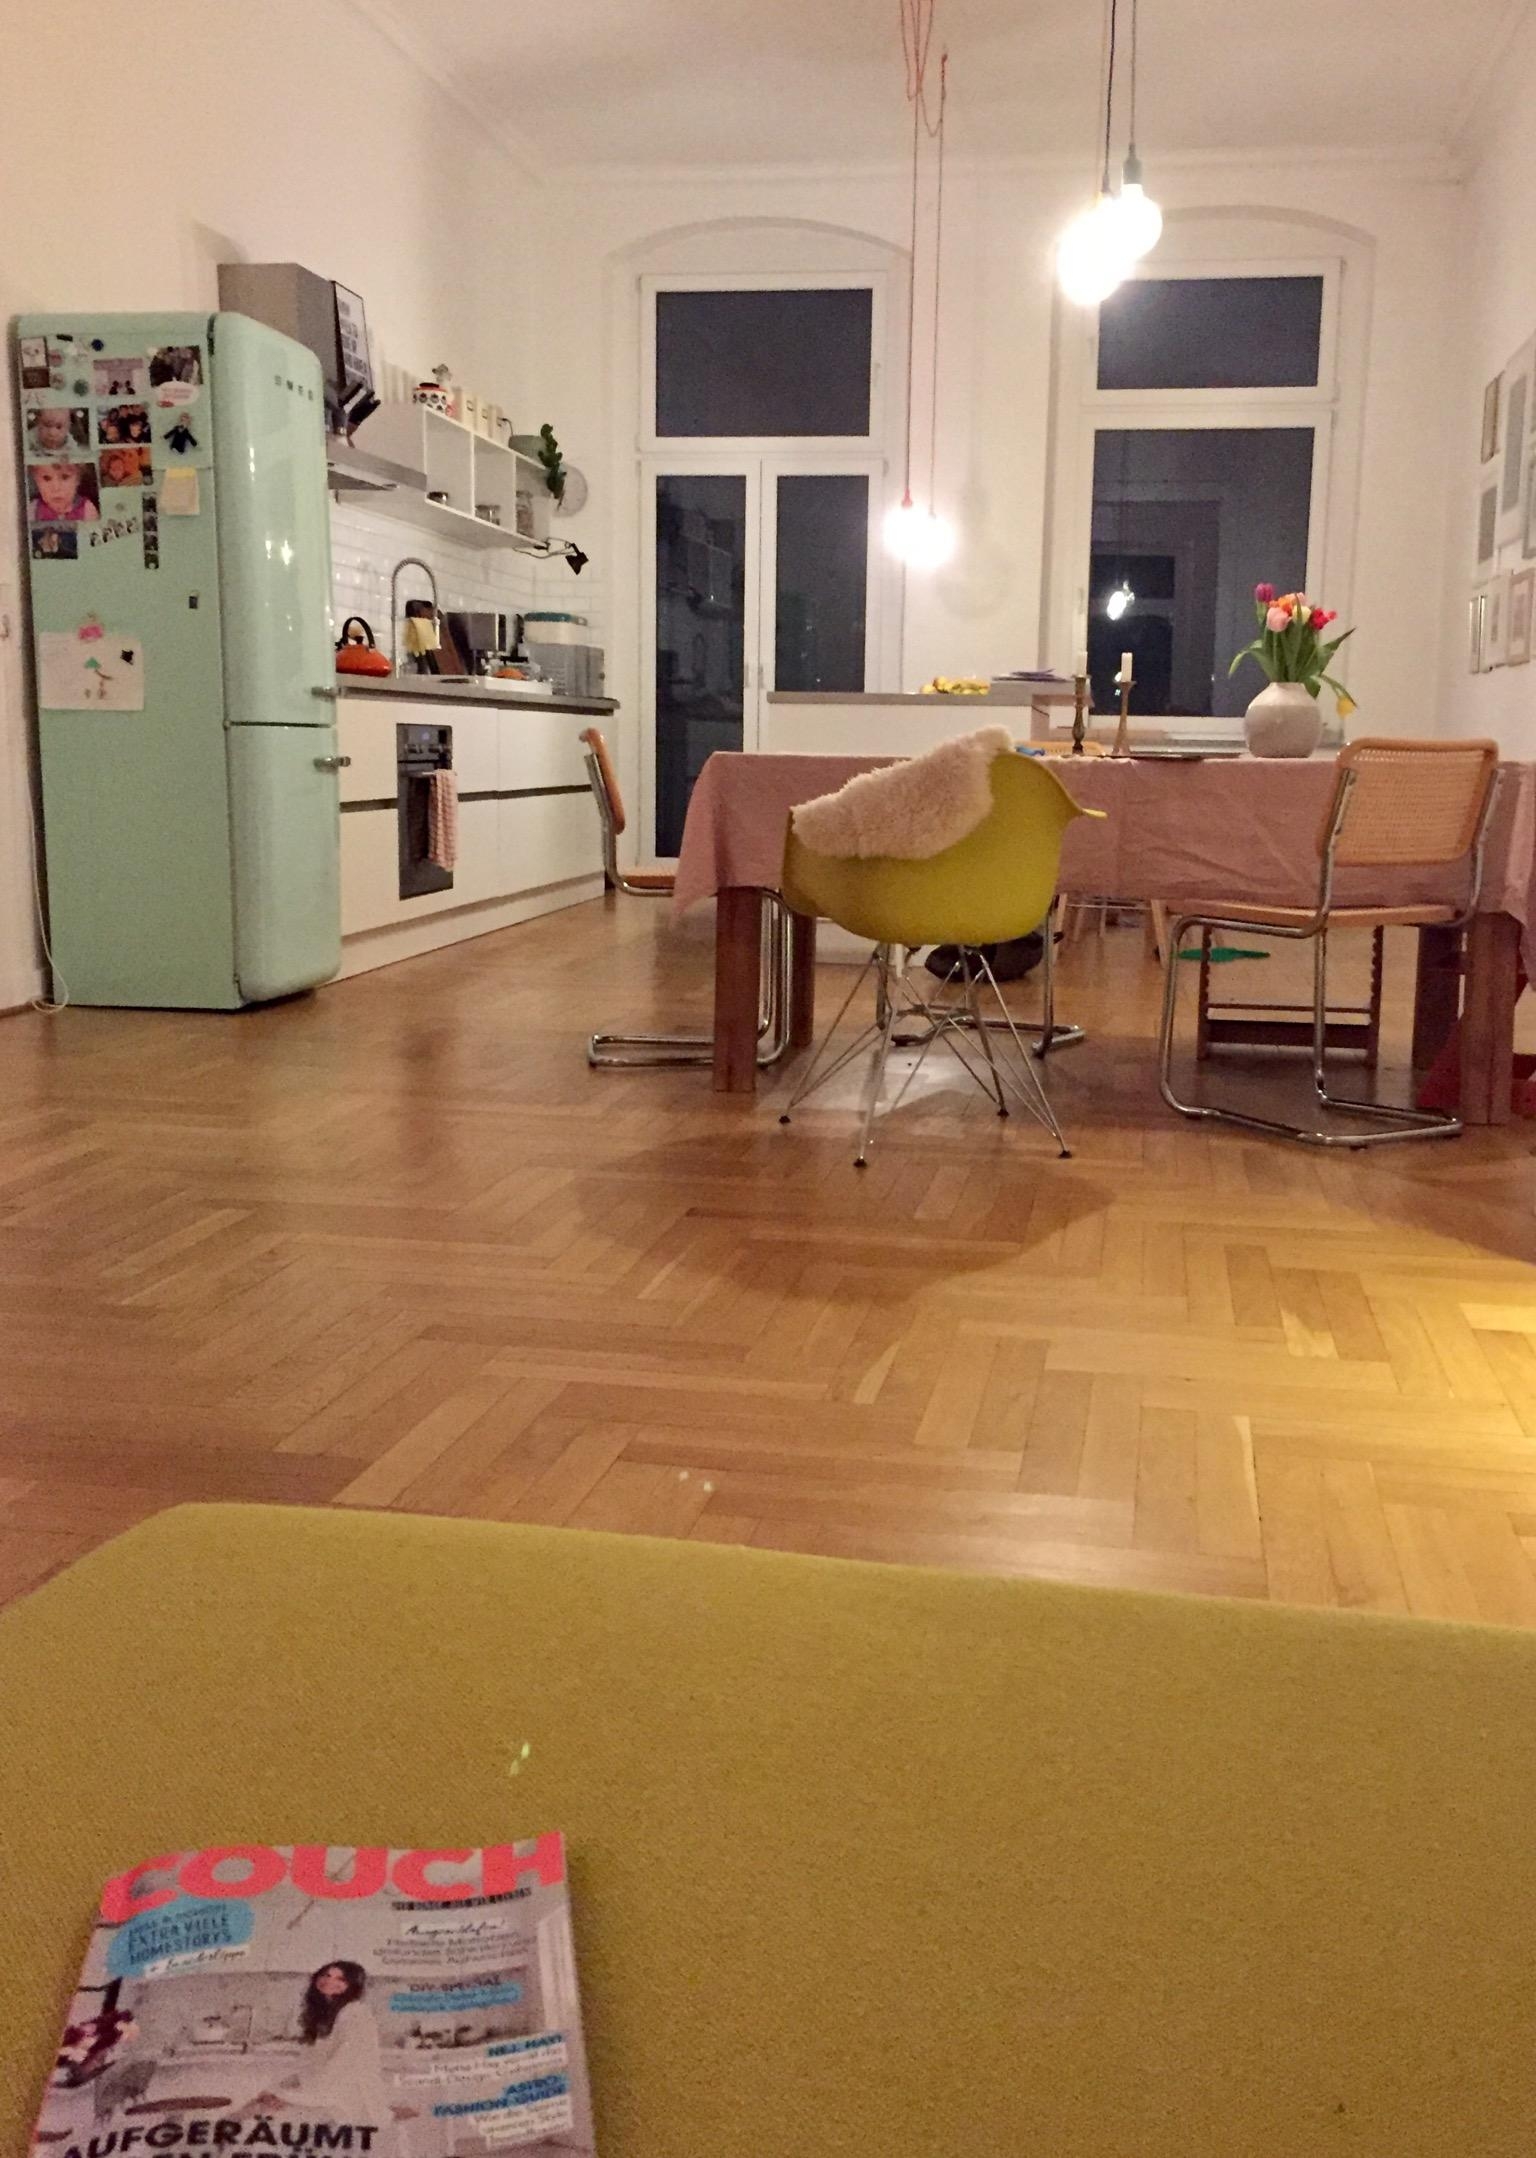 Gemütlicher Abend mit inspirierender Lektüre 😉 #couchmag #küche #esstisch #smeg #farbe #tischdecke #altbau #lesen